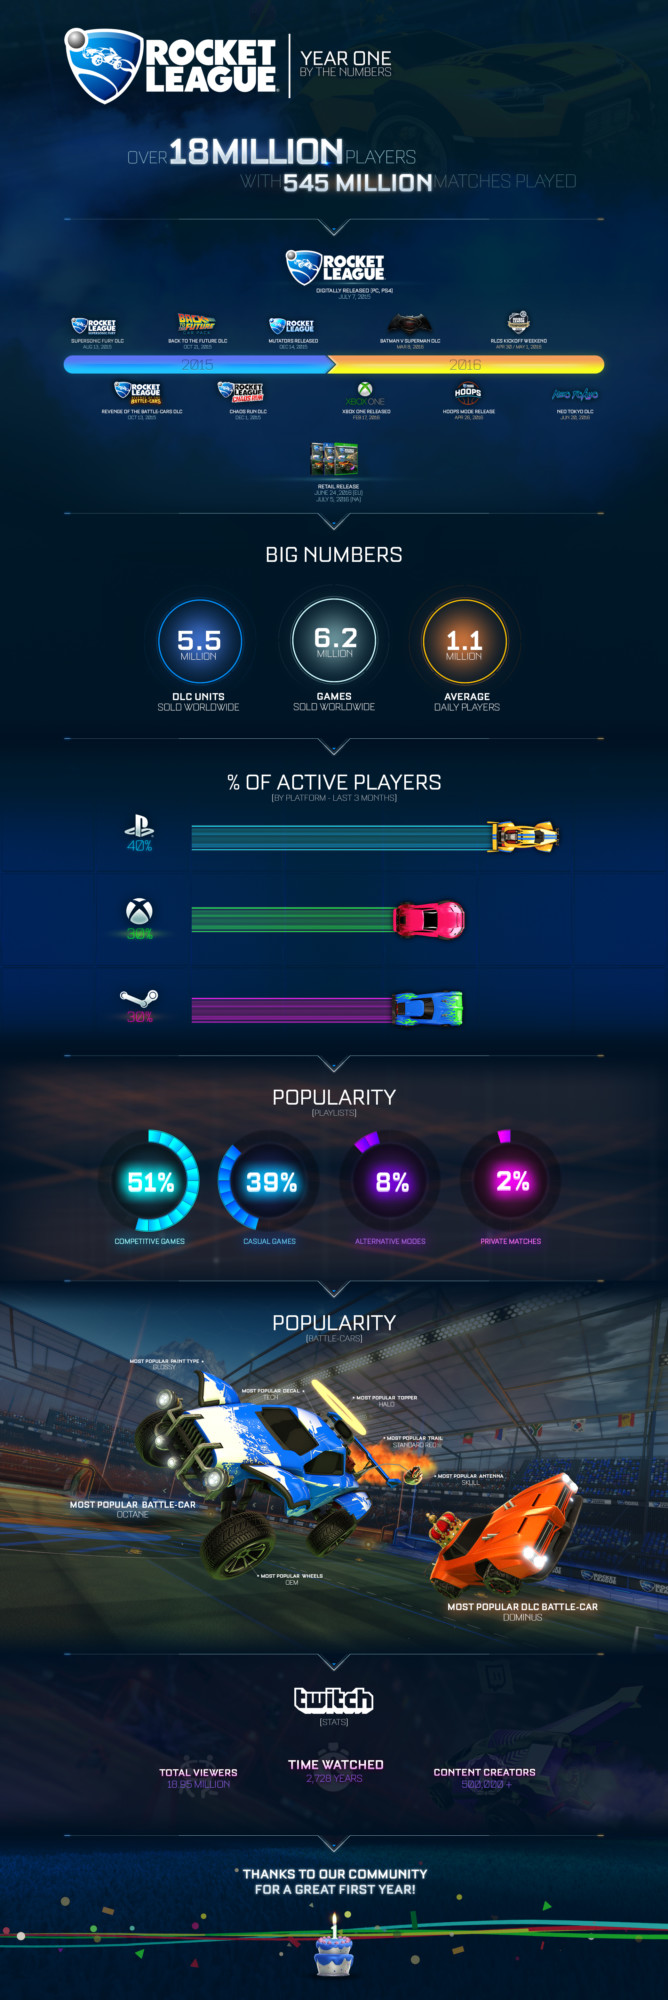 Rocket-League-Infographic